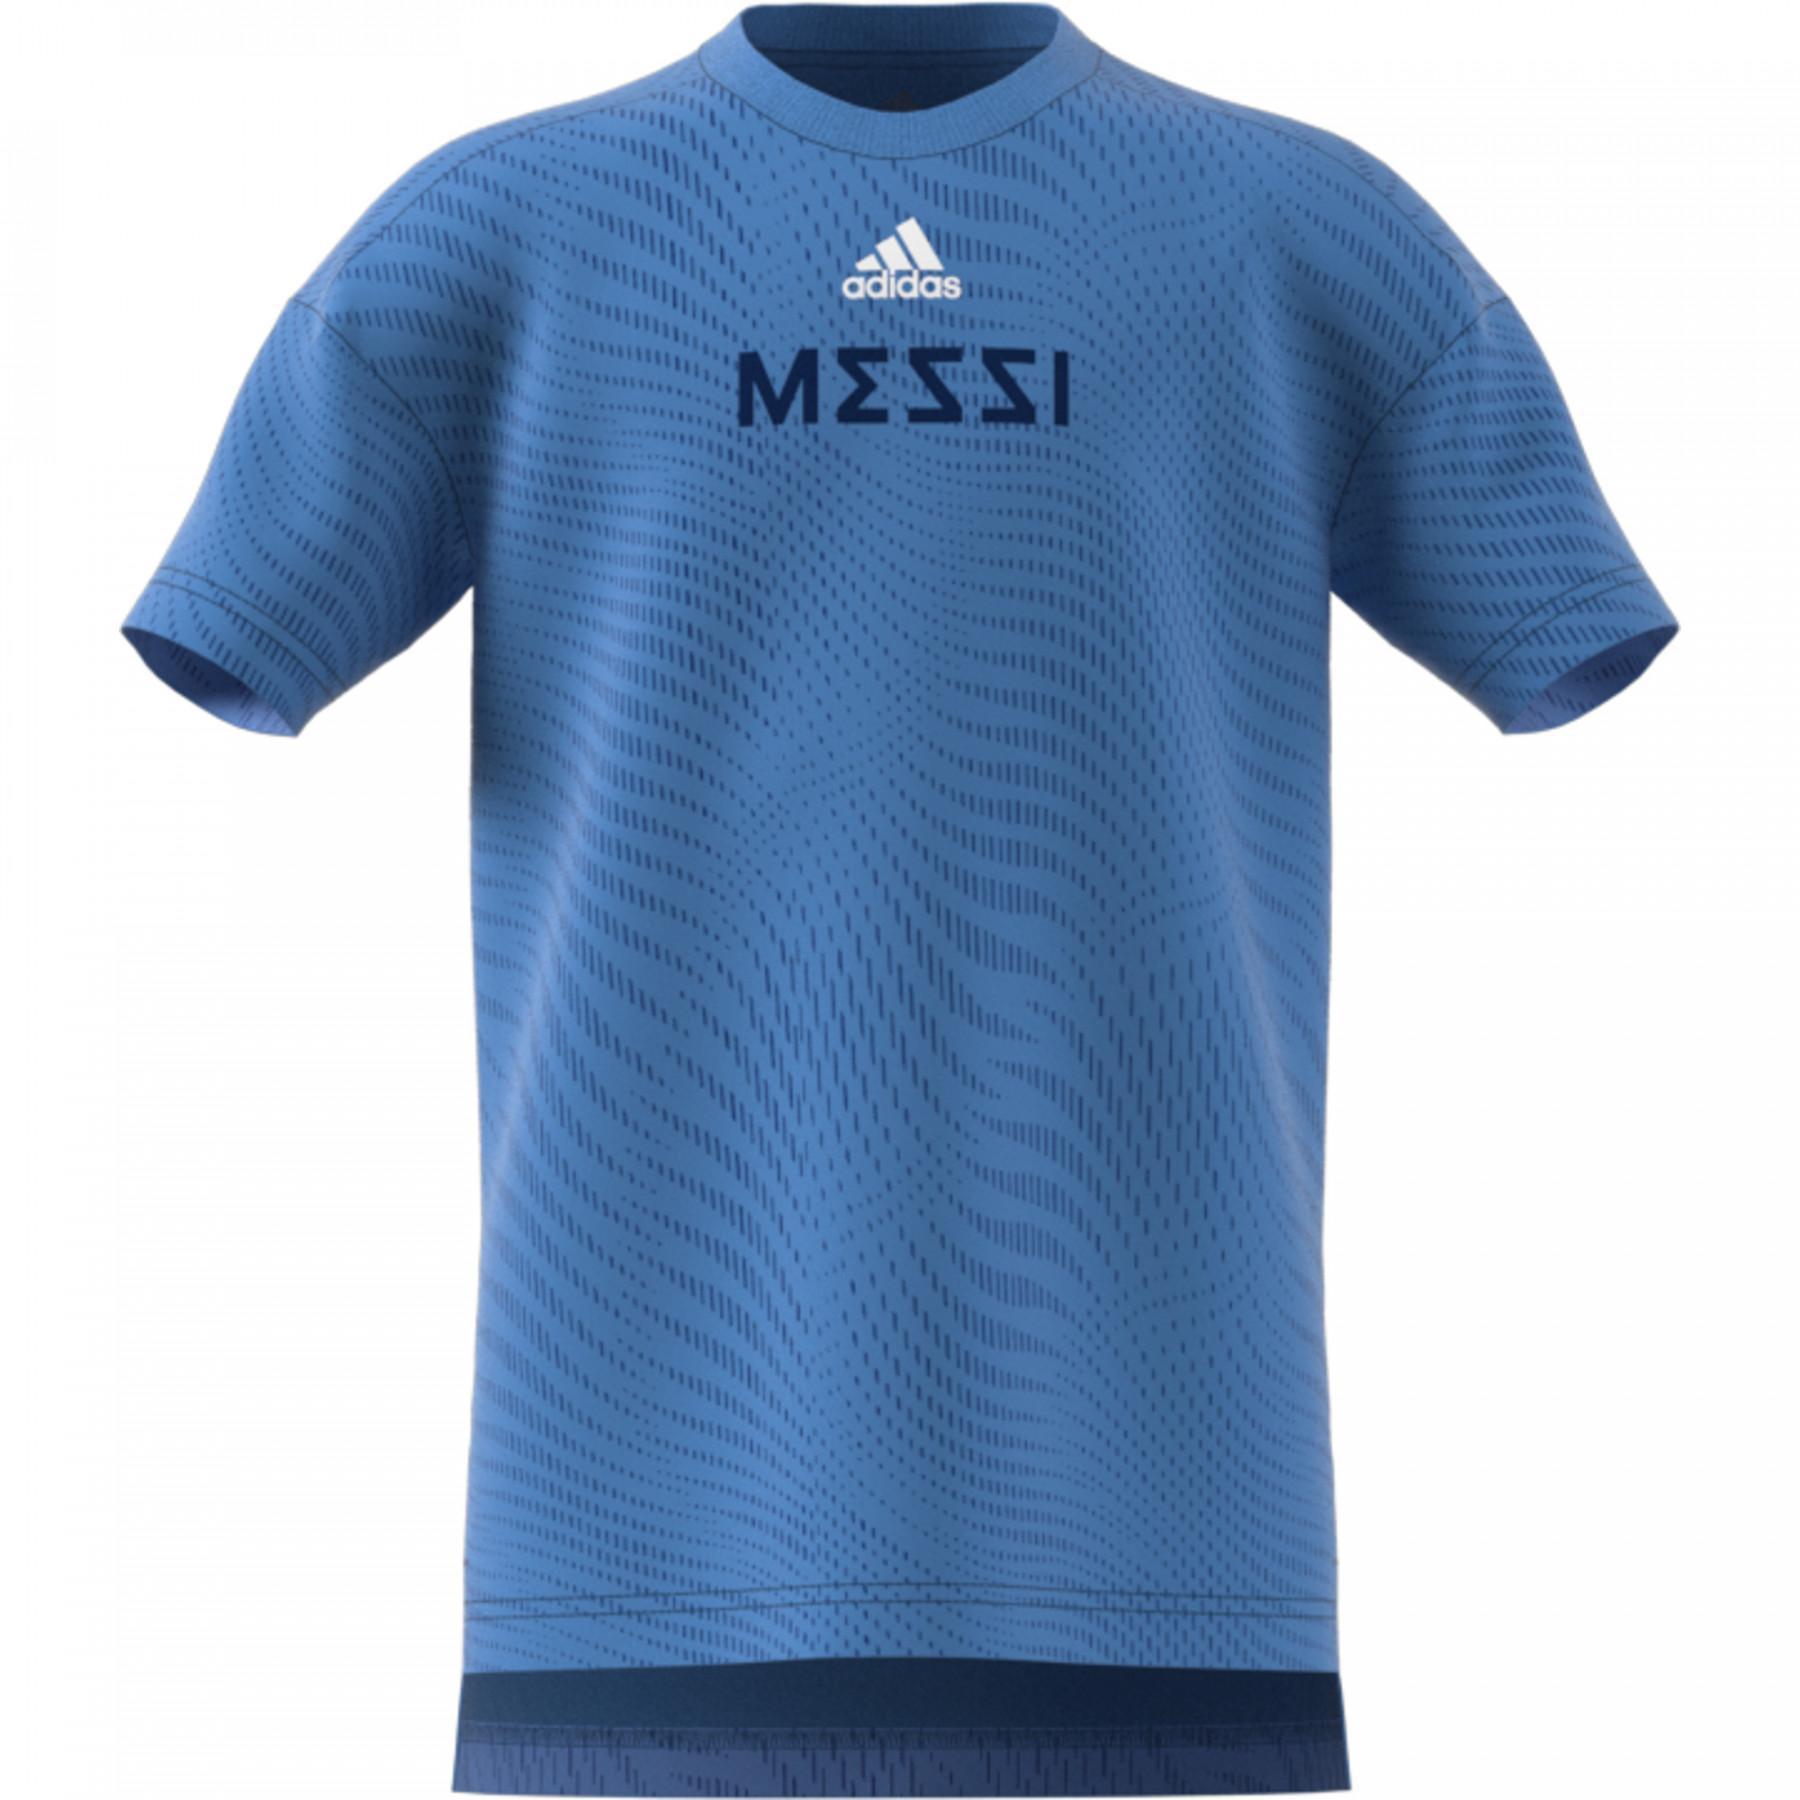 Kinder-T-Shirt adidas Messi